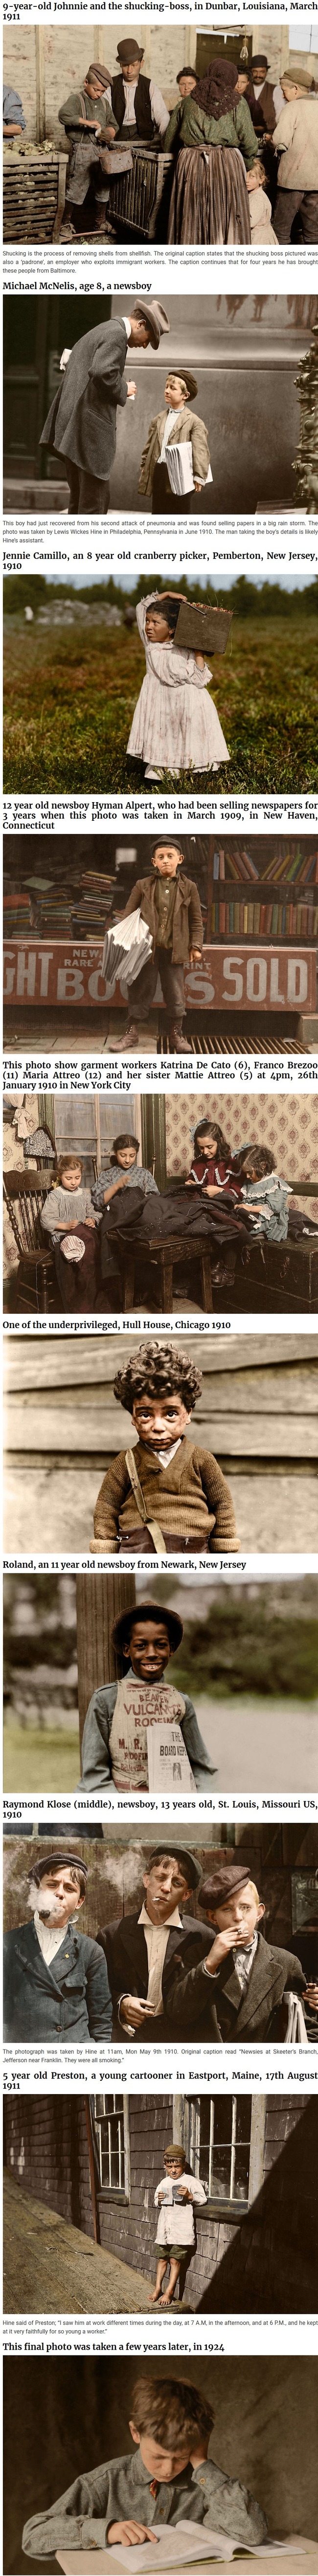 Lapsityövoimaa Amerikassa - Yli sata vuotta sitten otettuja kuvia.